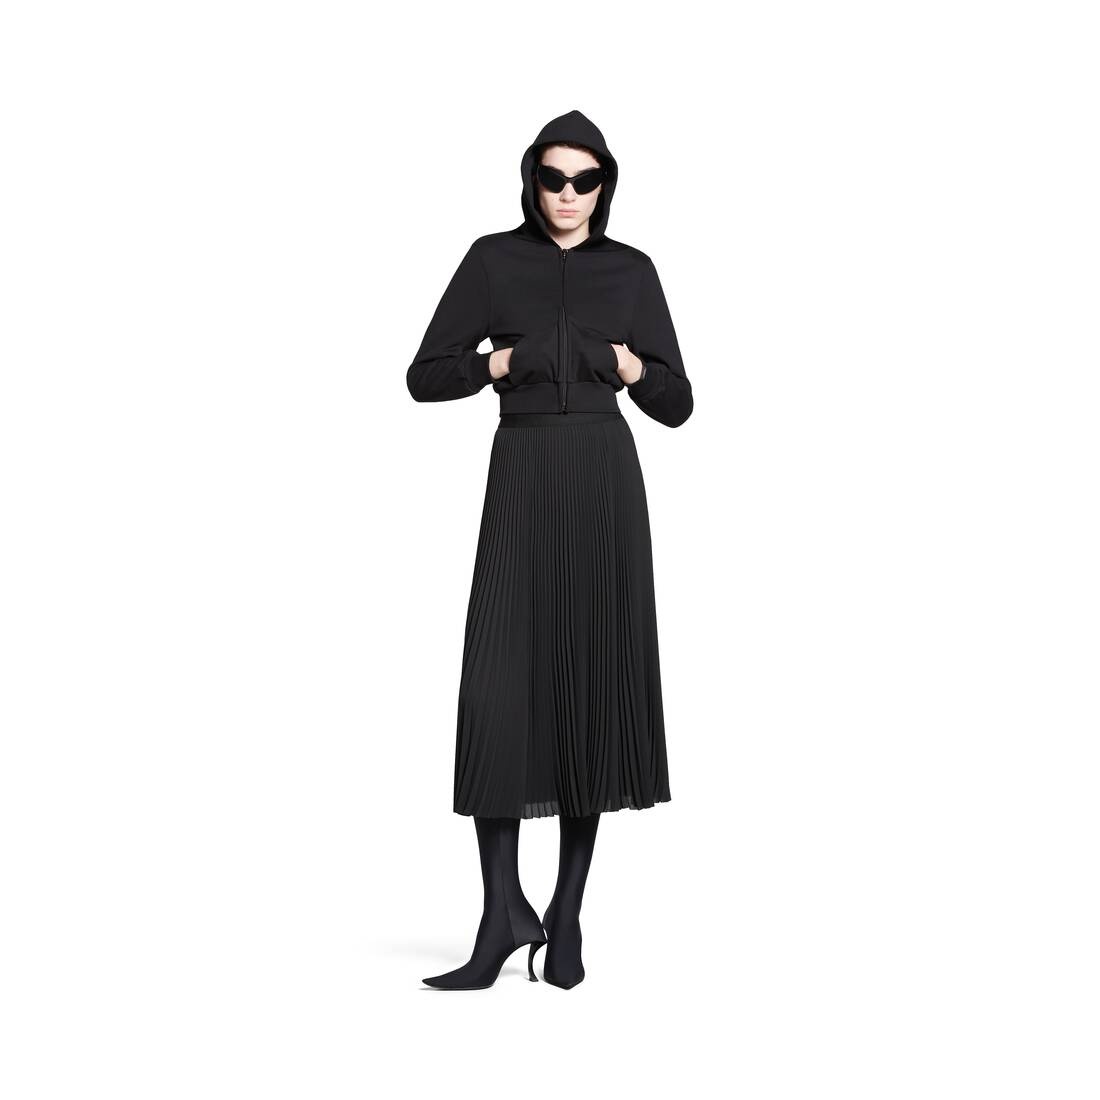 Women's Pleated Skirt in Black